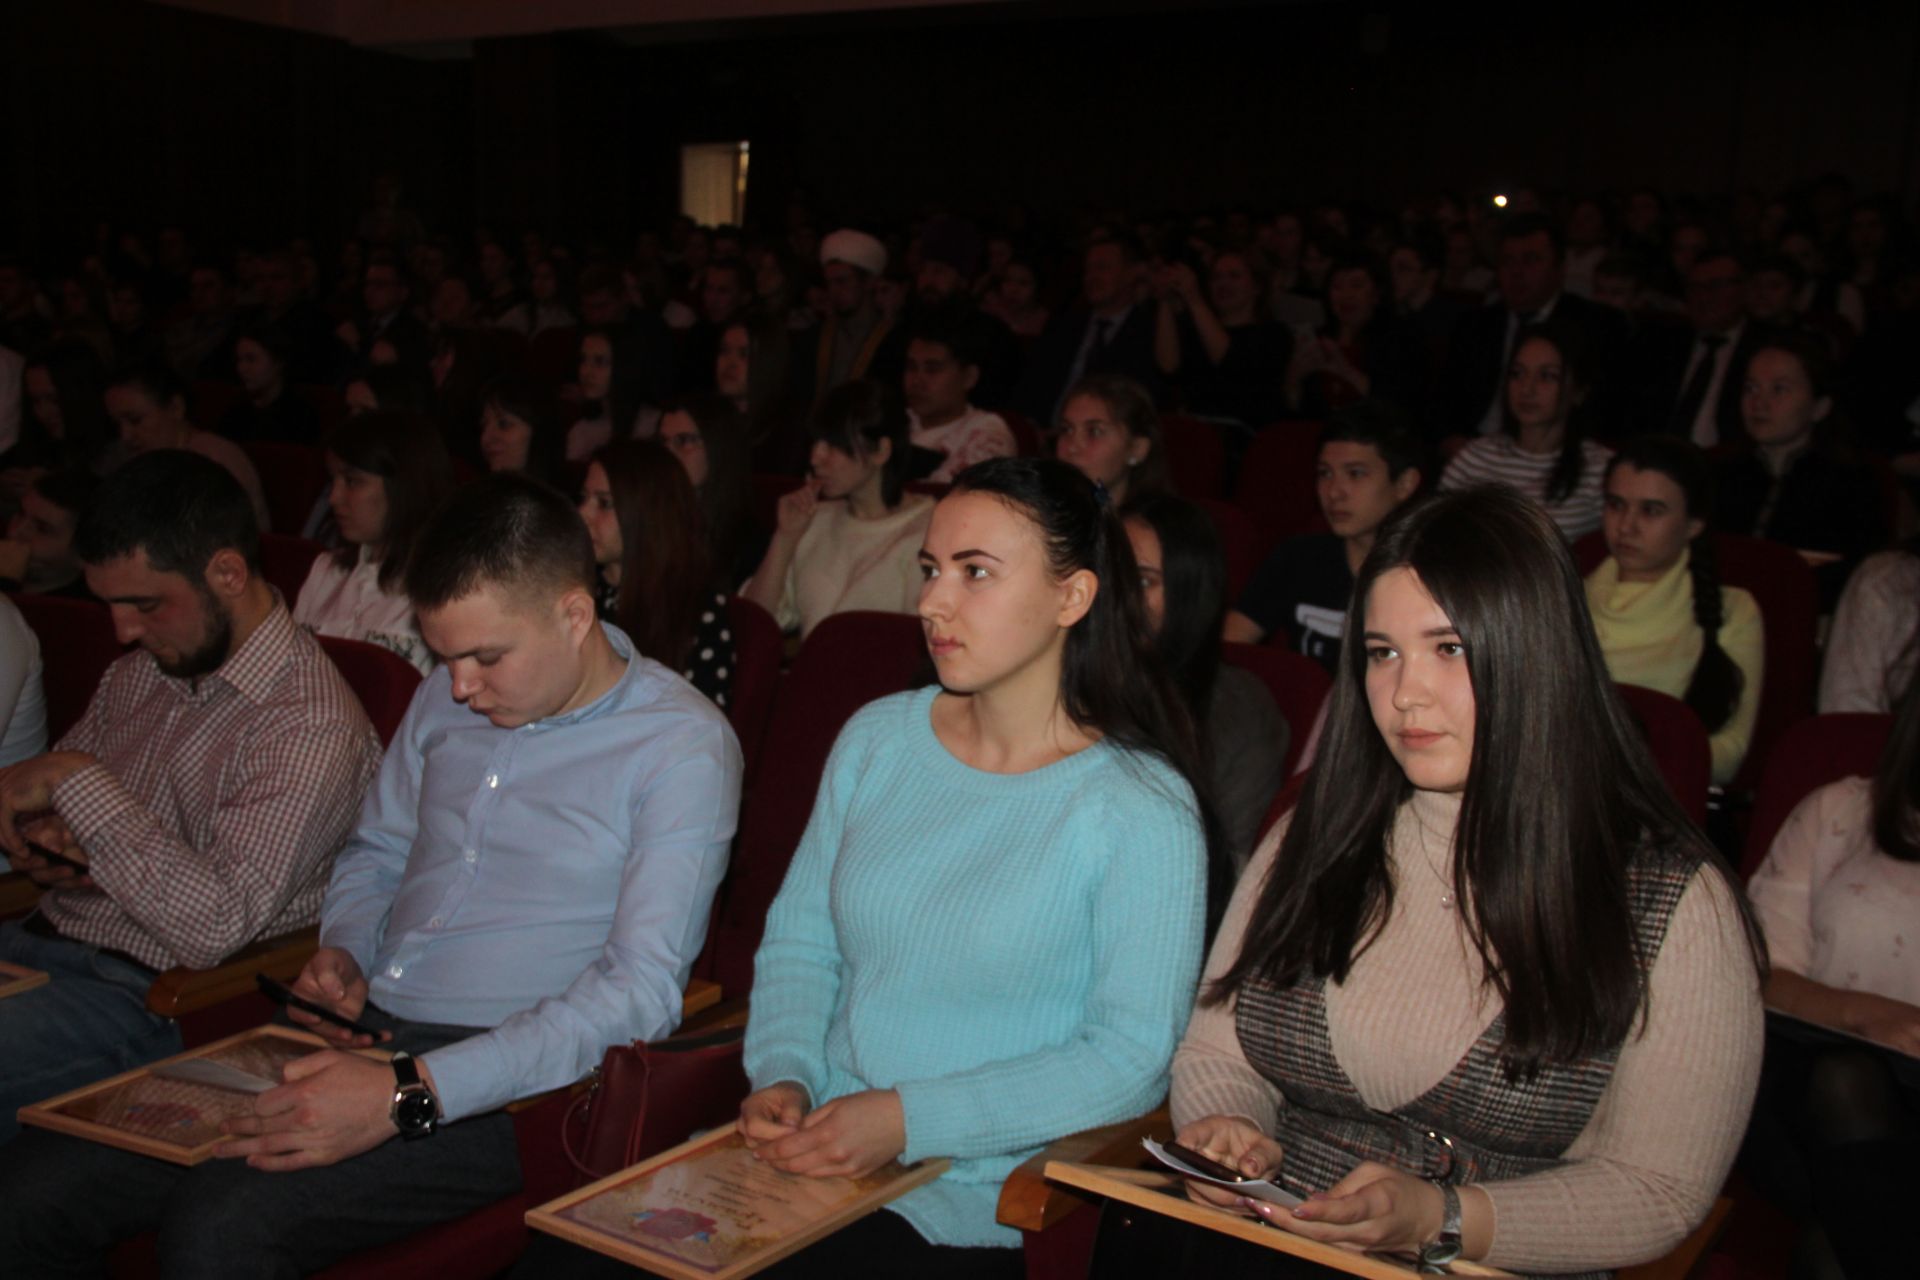 Молодежный форум 2019 в Алькеевском районе